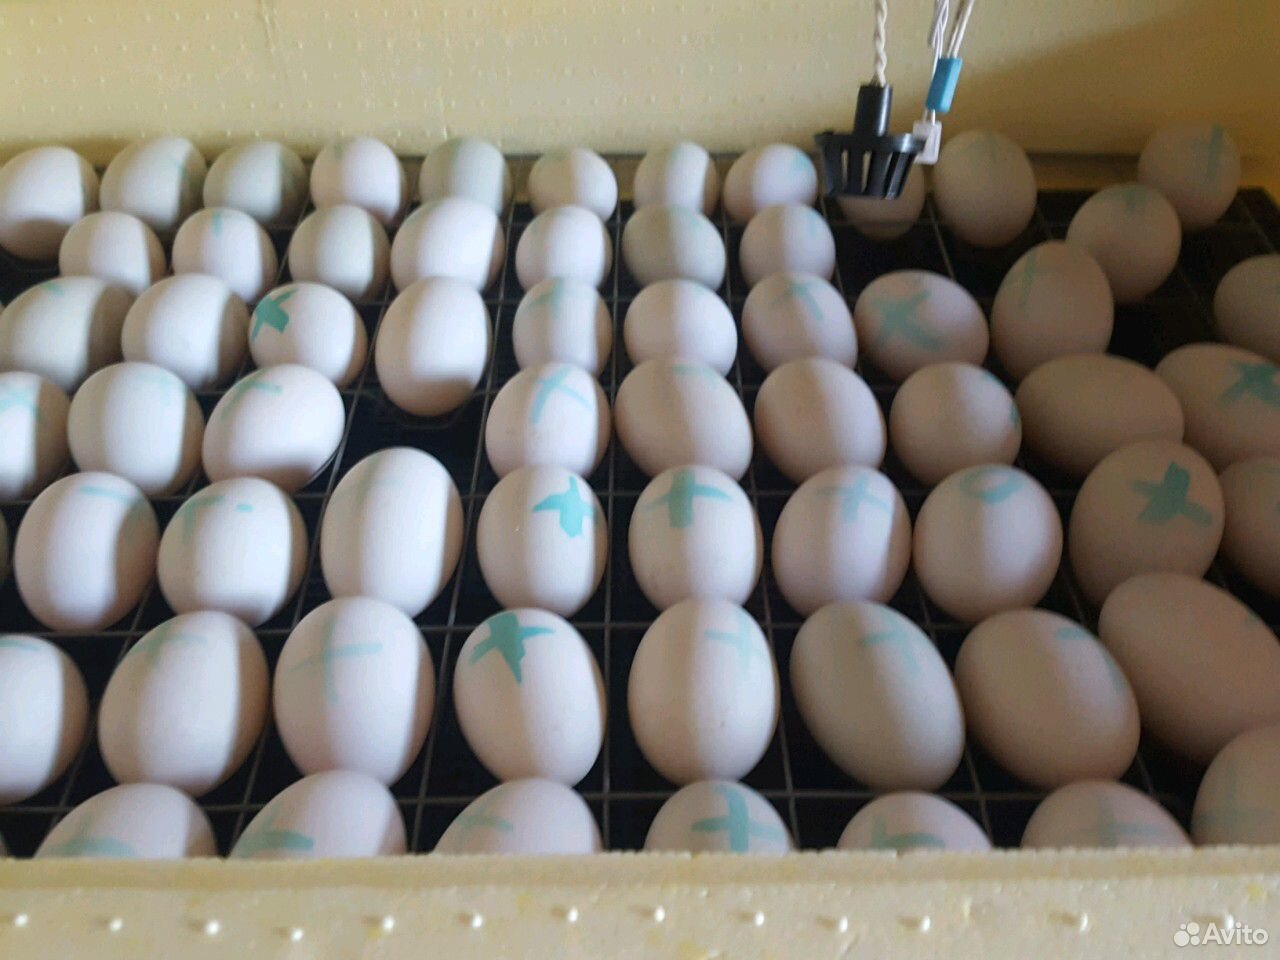 Яйцо утиное инкубационное. Инкубация яйца утки старт 53. Инкубационное яйцо объявление. Яйца уток. Инкубационное яйцо купить в самаре